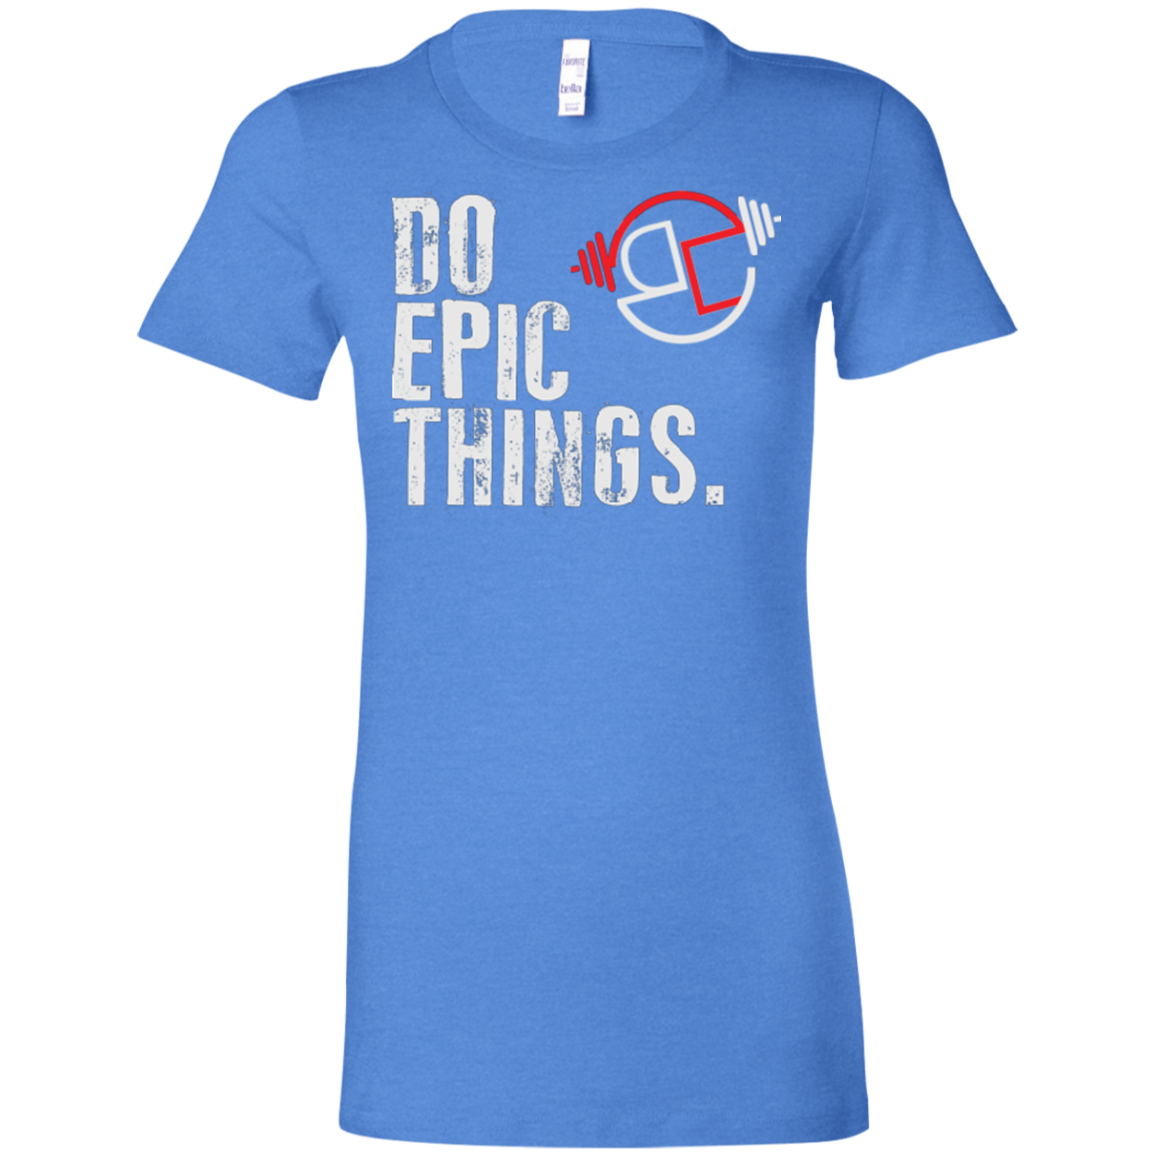 Do Epic Things Ladies' Favorite T-Shirt